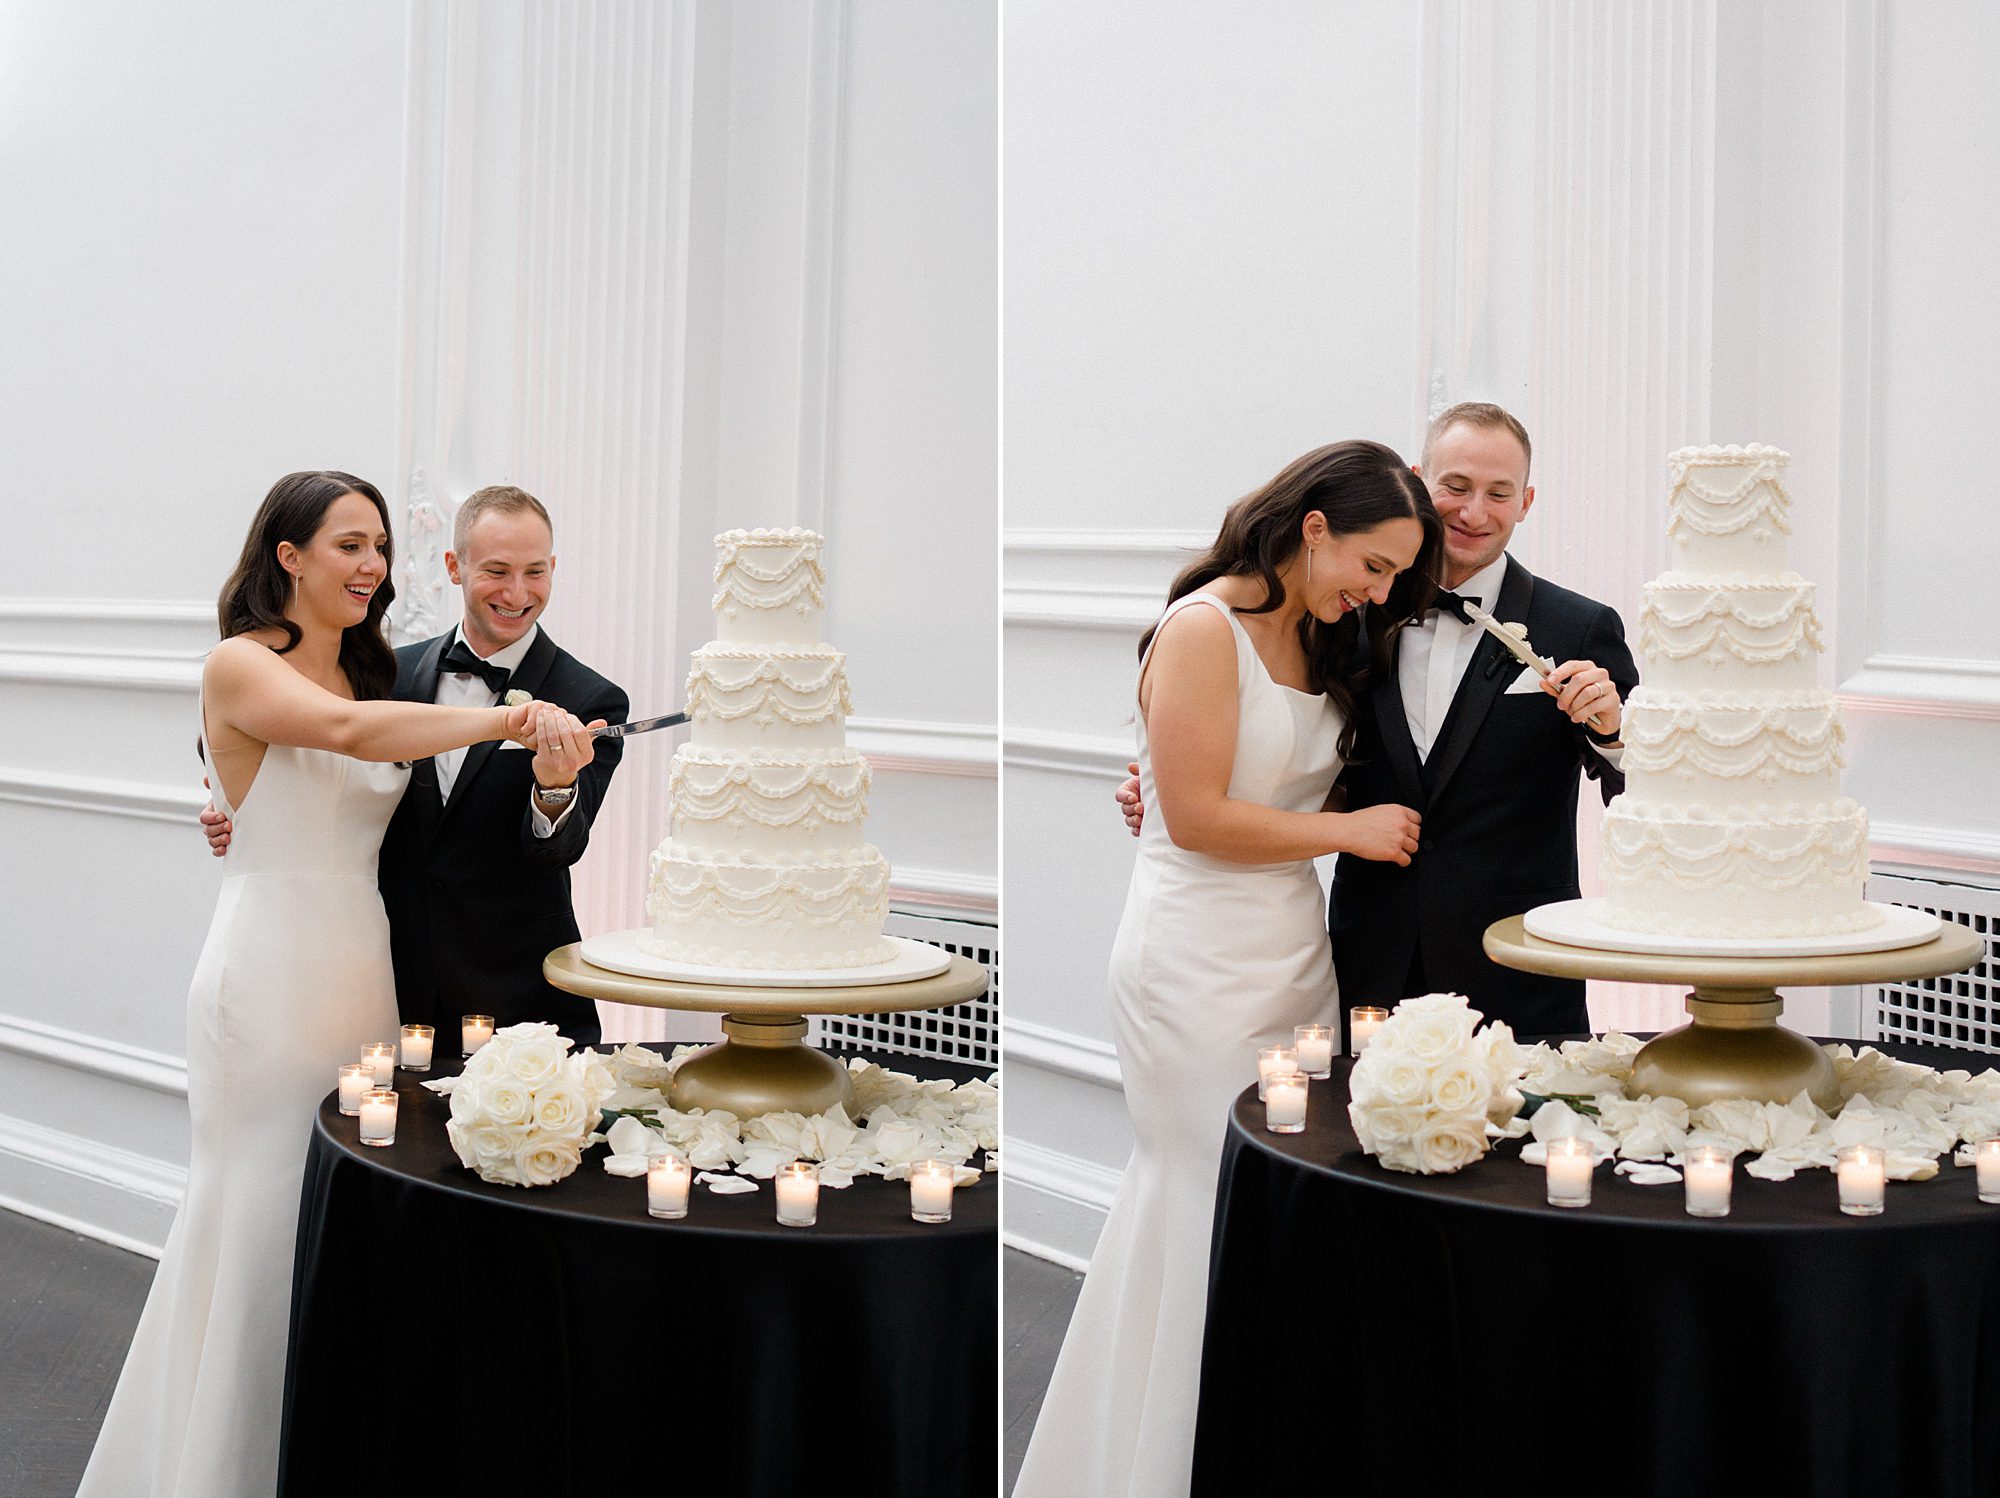 newlyweds cut their wedding cake